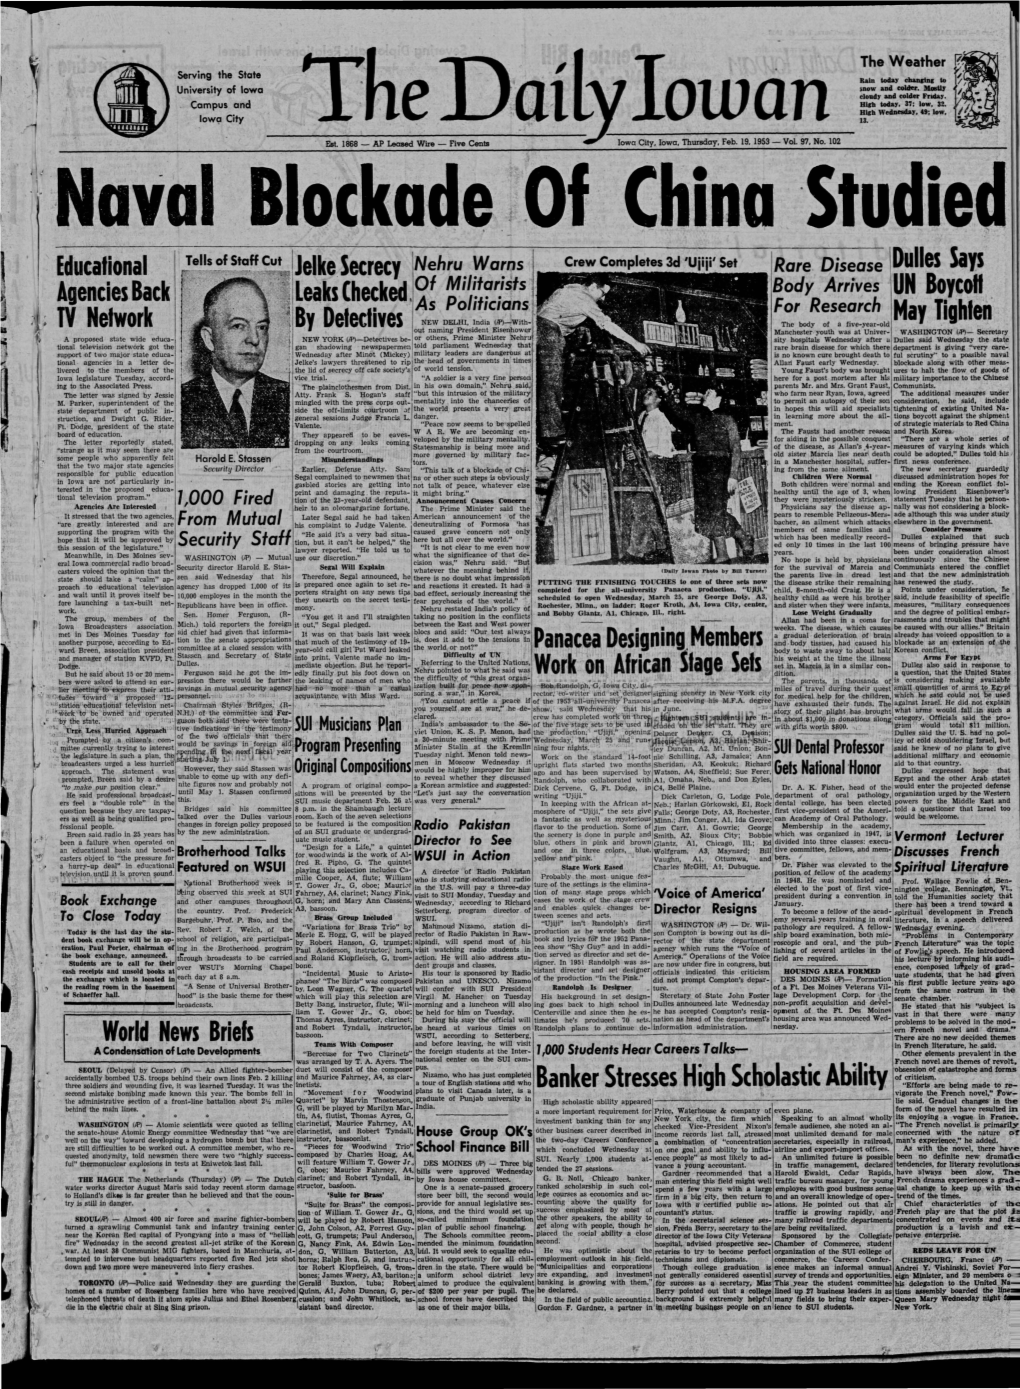 Daily Iowan (Iowa City, Iowa), 1953-02-19